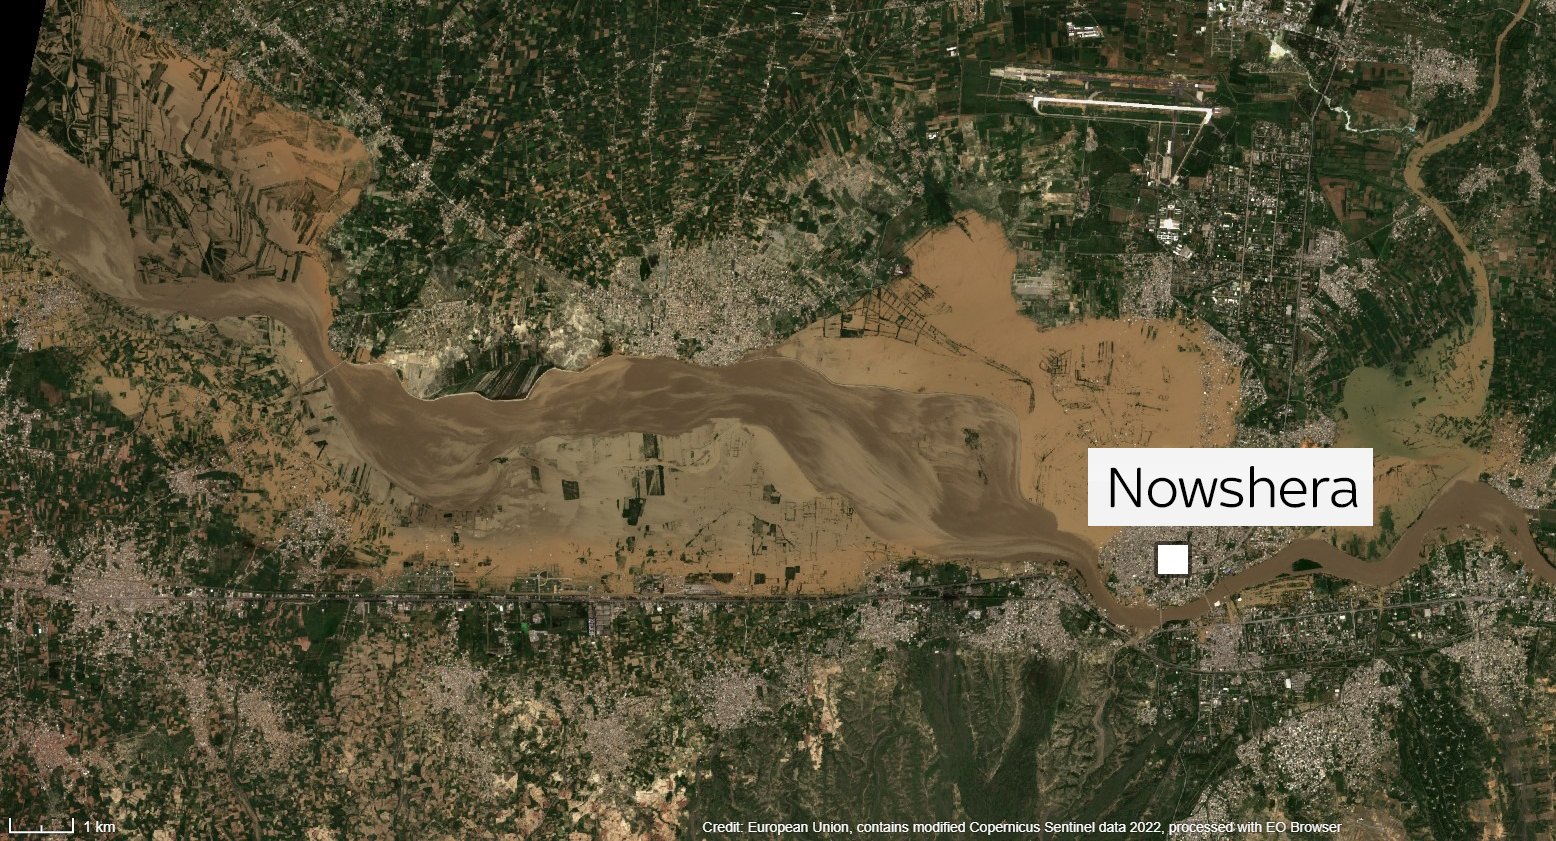 Inondations au Pakistan : des images satellites et des cartes montrent l'ampleur de la catastrophe | Nouvelles du monde